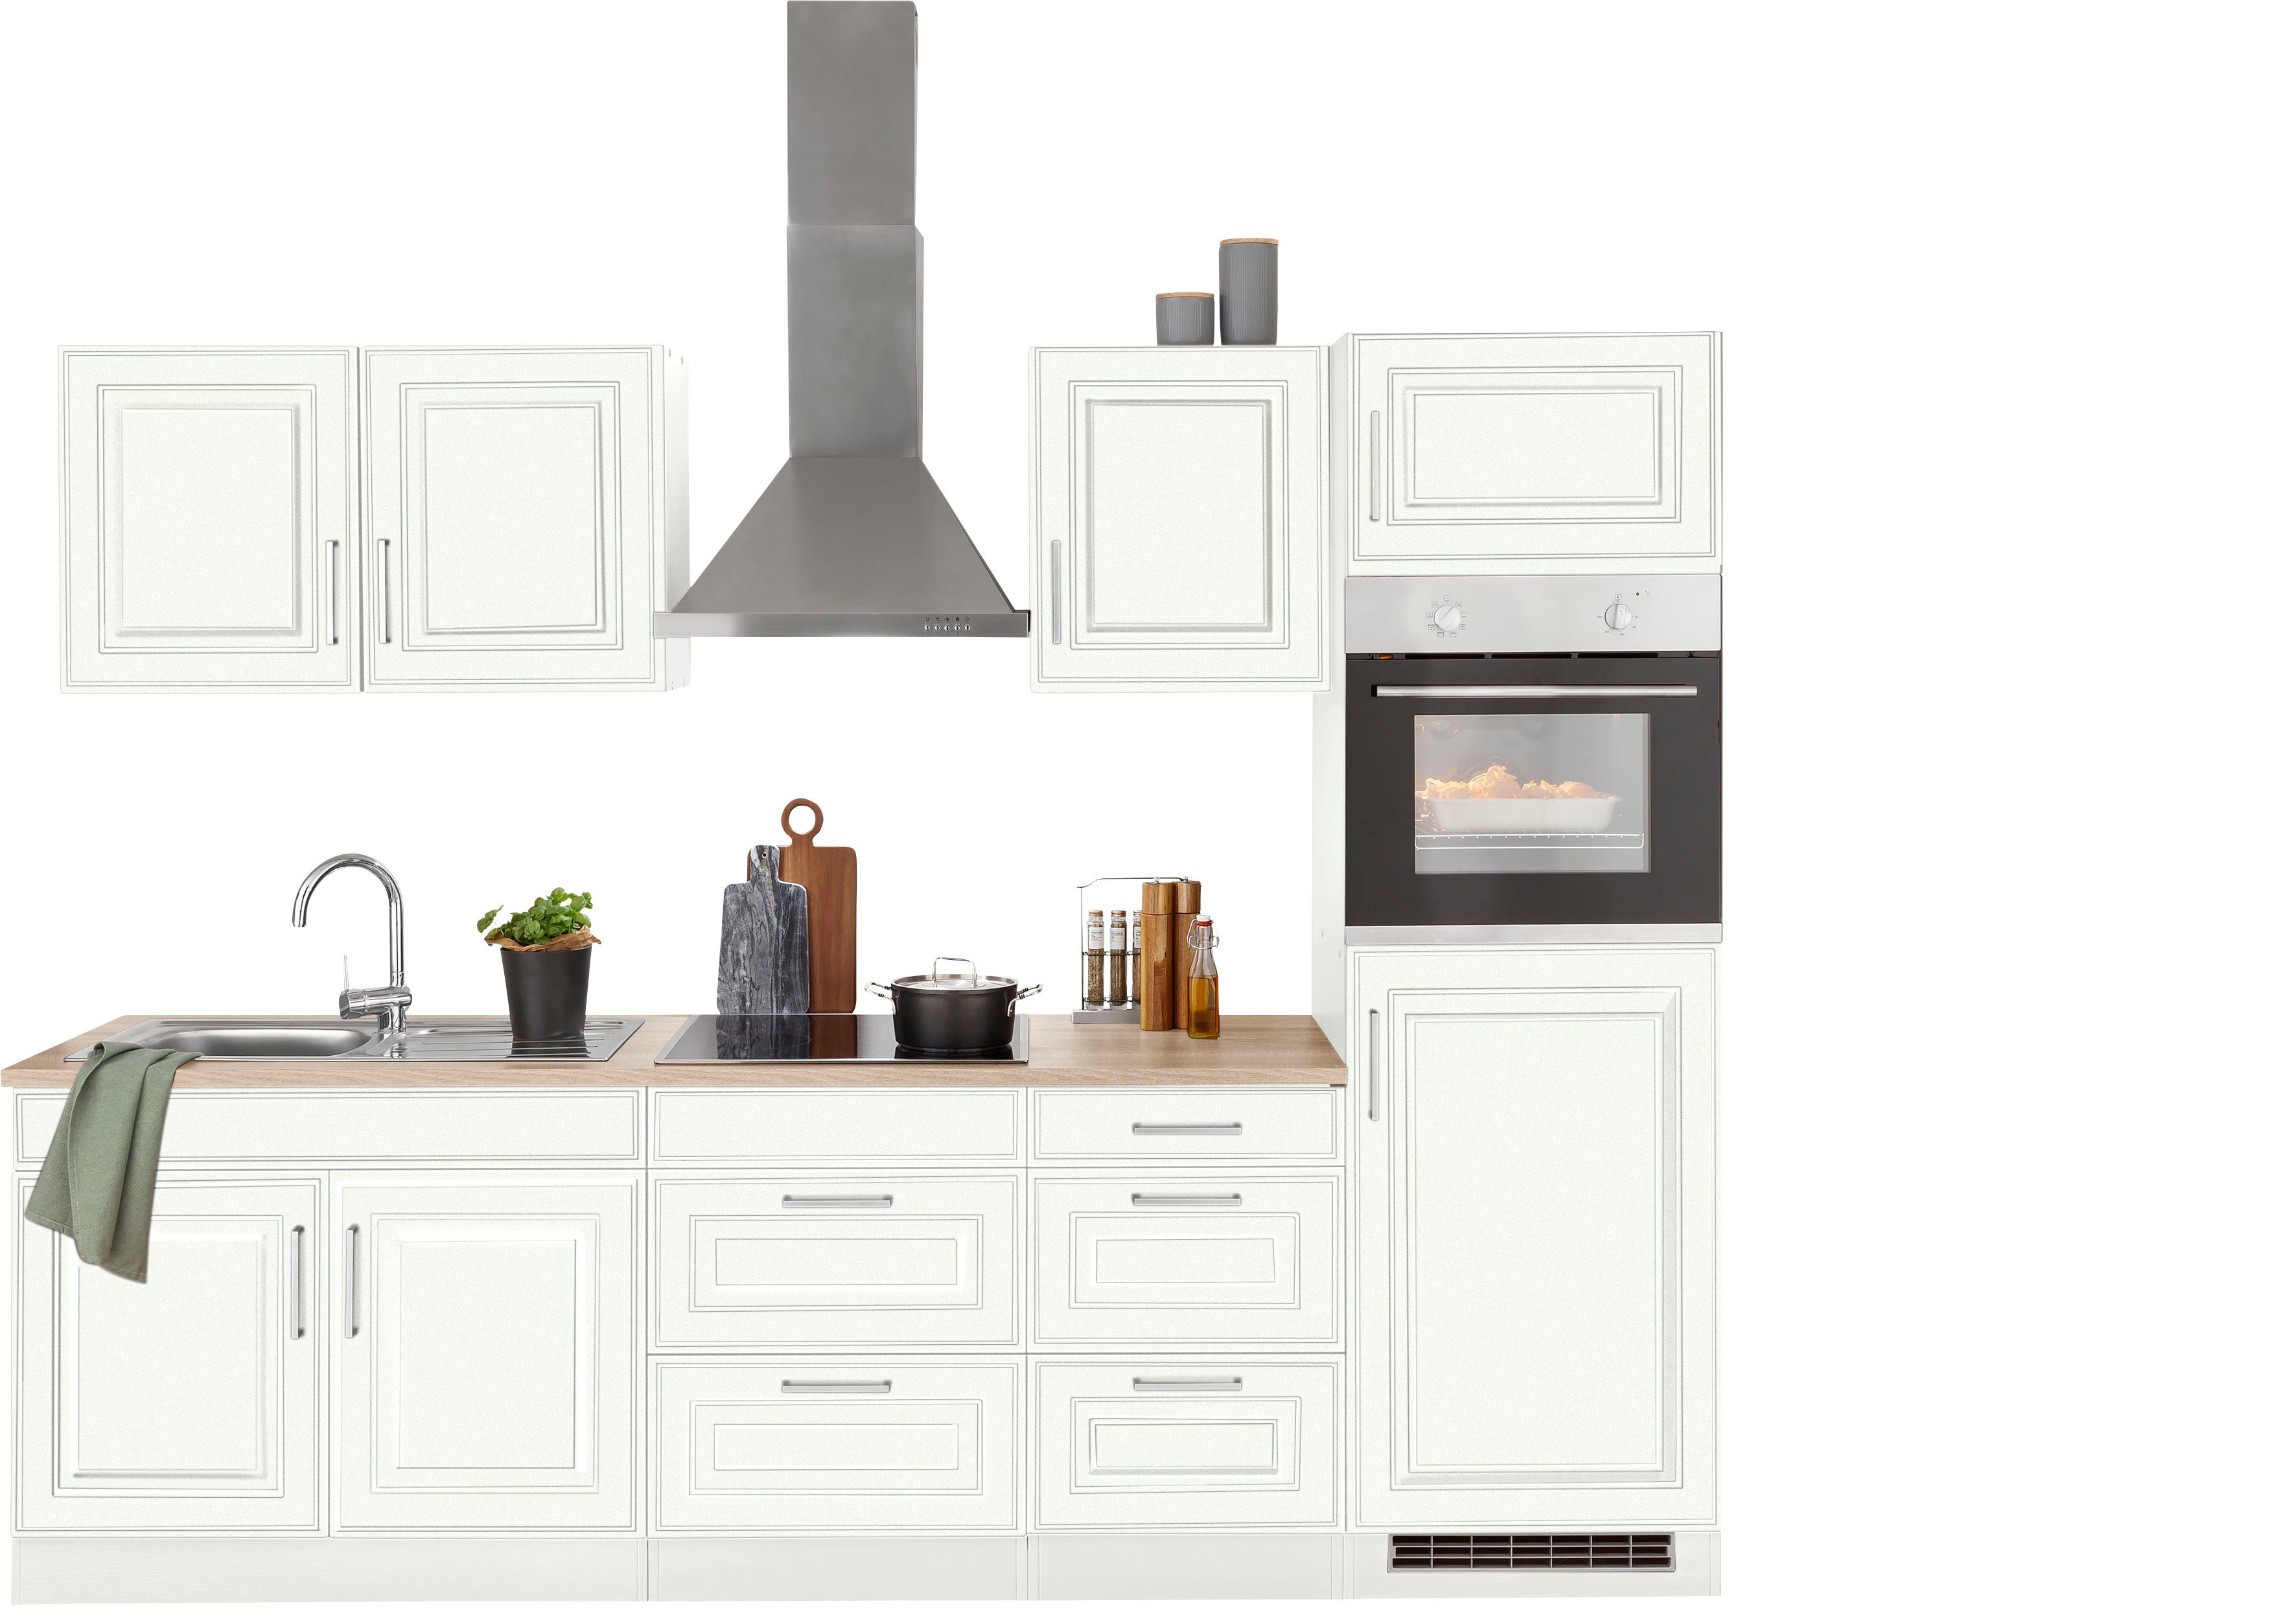 HELD MÖBEL Küchenzeile Stockholm, Breite 270 cm, mit hochwertigen MDF Fronten im Landhaus-Stil weiß